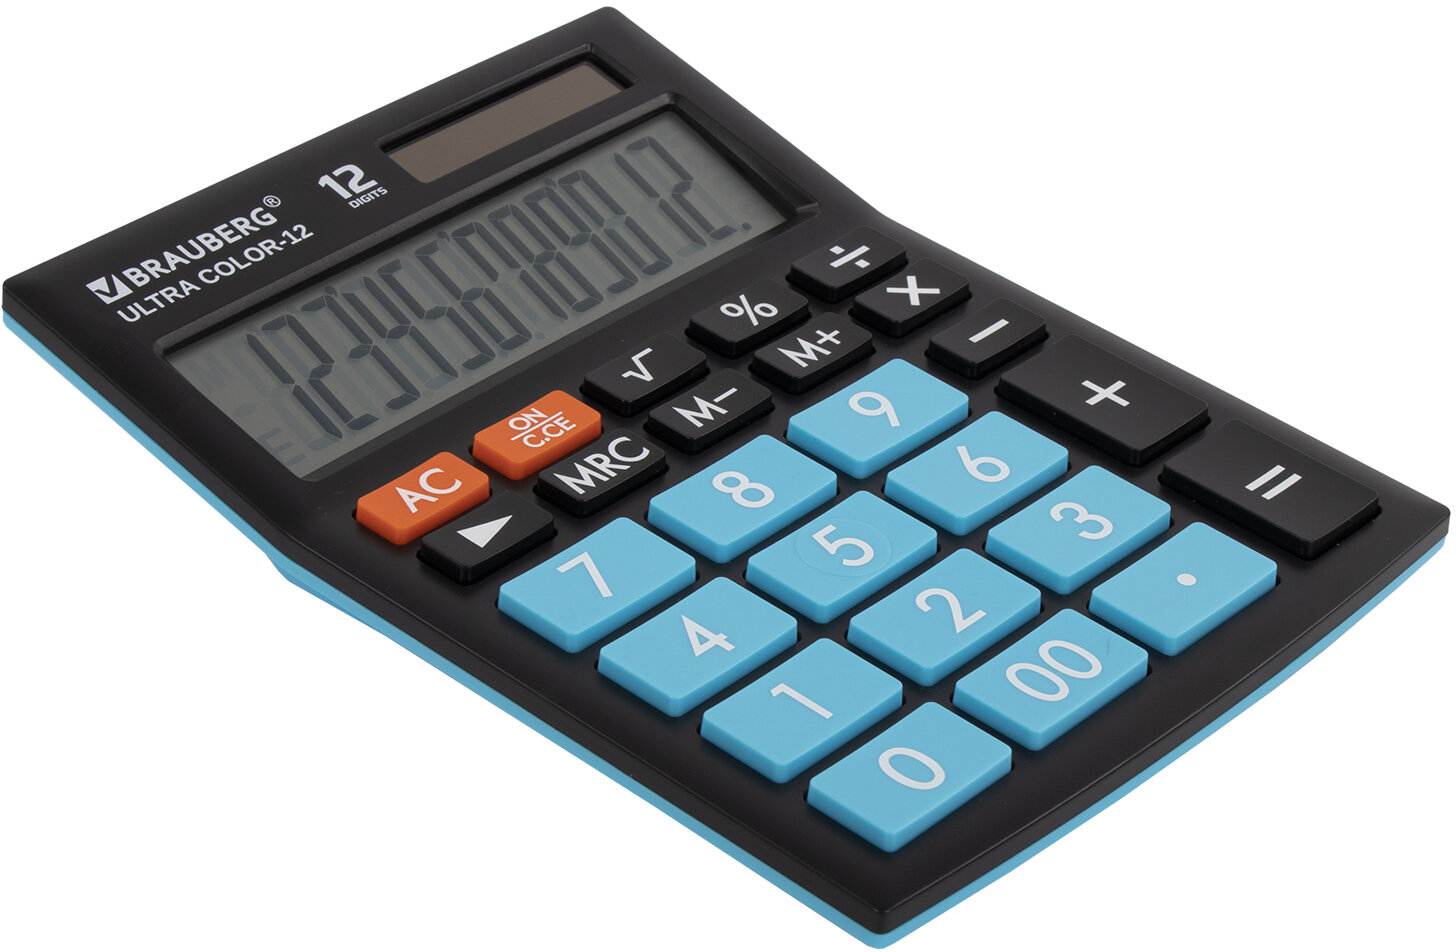 картинка Калькулятор настольный, 12 разрядов, 19,2*14,3 см, двойное питание, черный/голубой, "Ultra Color-12-Bkbu", BRAUBERG, 250497 от магазина Альфанит в Кунгуре